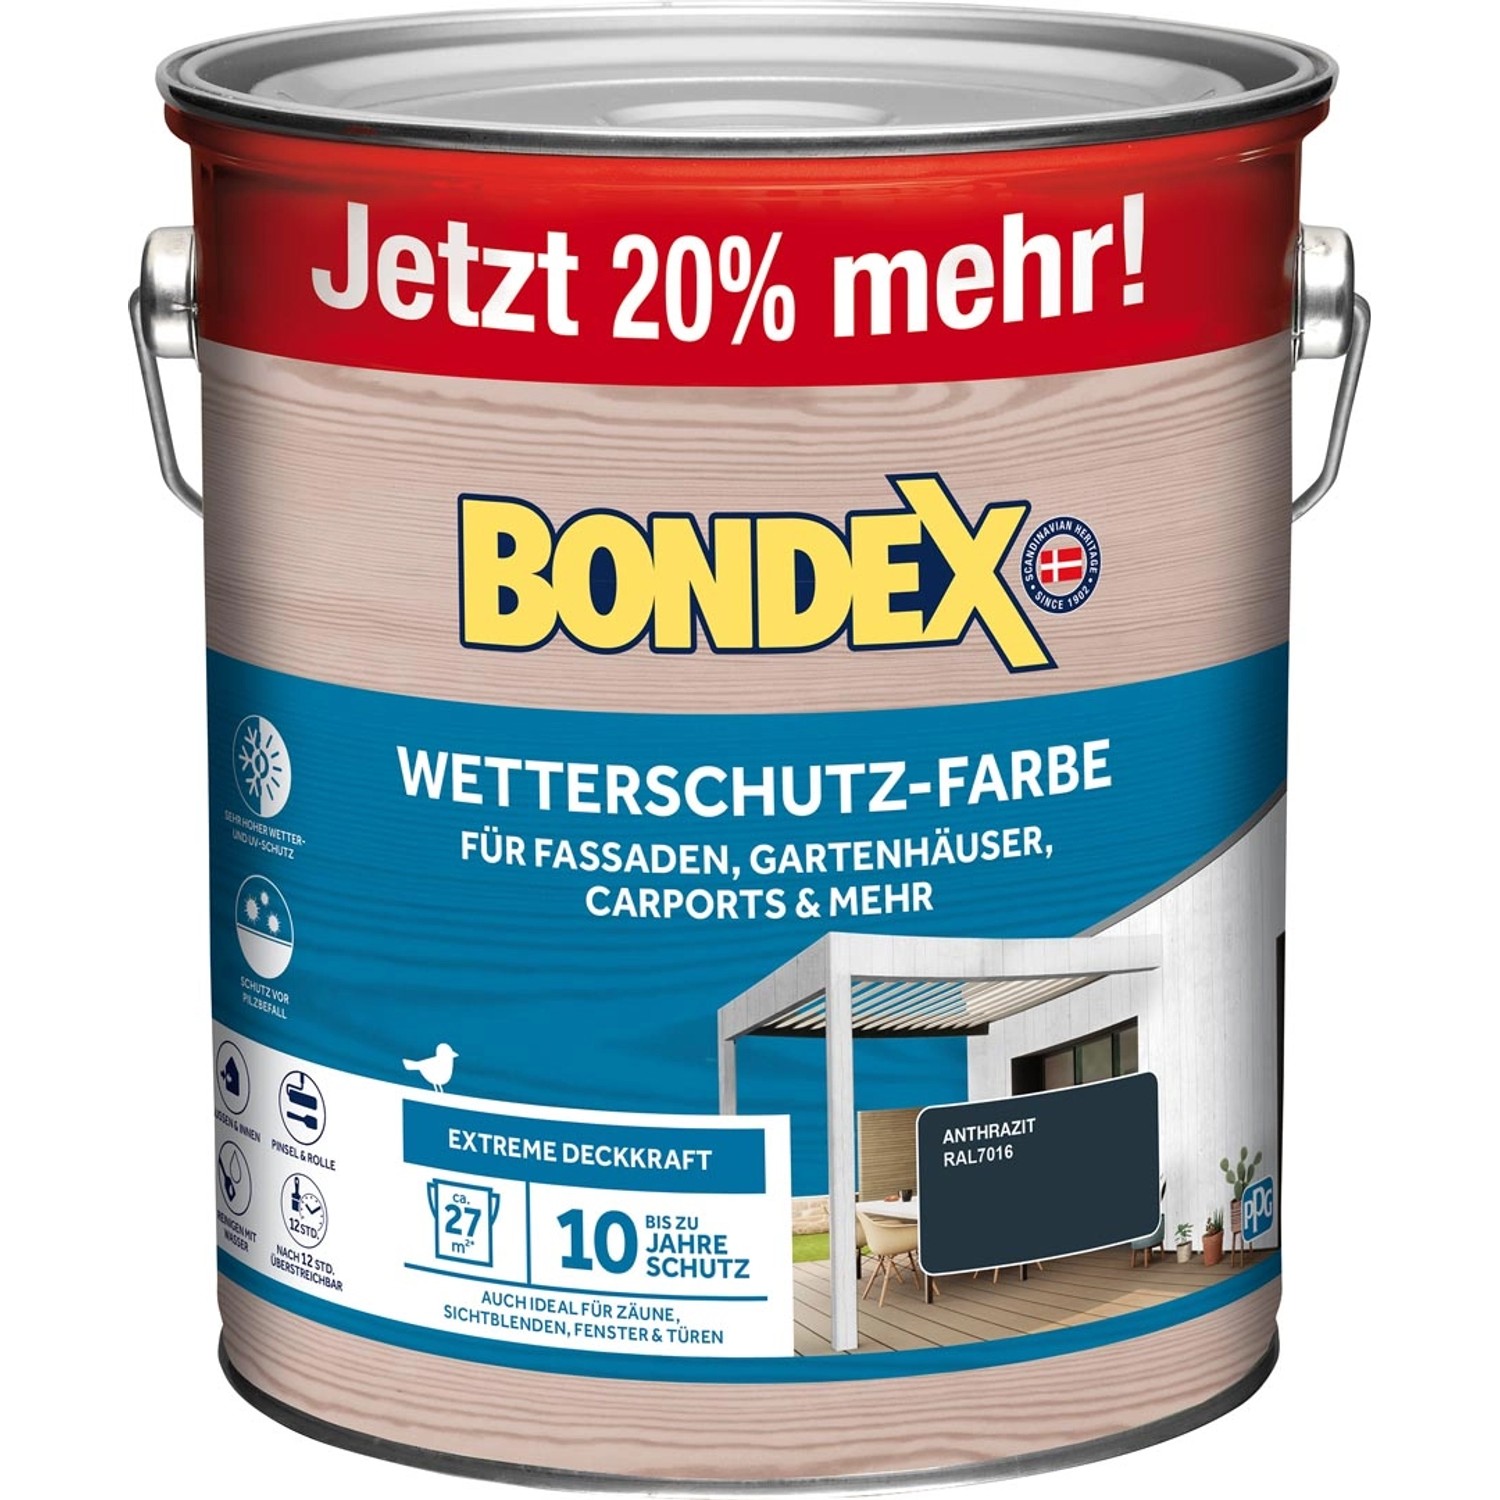 Bondex Wetterschutz-Farbe RAL 7016 Anthrazitgrau - 3 l reicht für ca. 27 m²